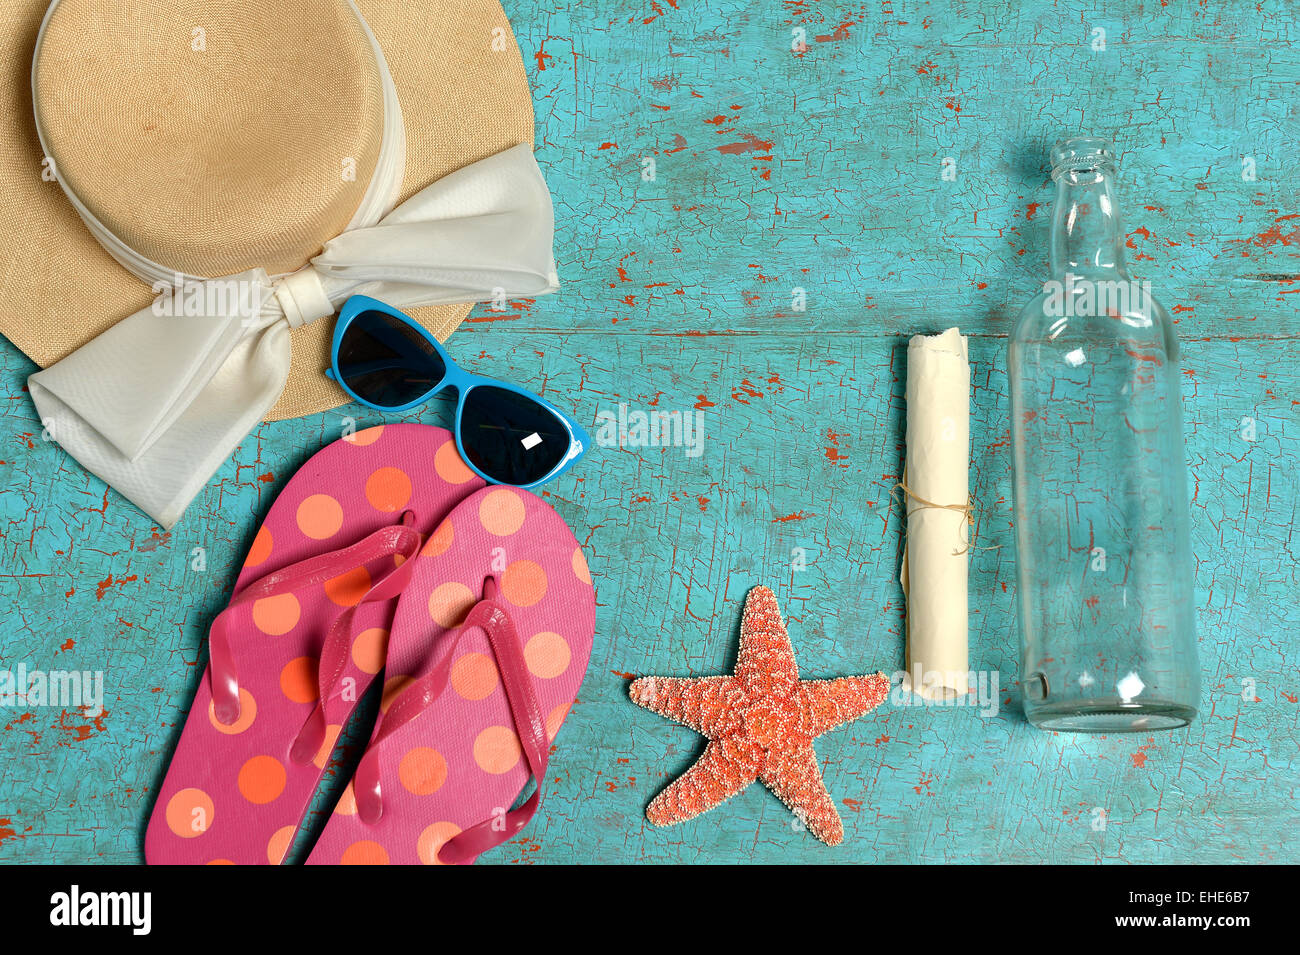 Vintage Tisch mit Sommer-Gegenständen wie Hut, Sonnenbrille, Flip-flops, Seesterne und eine Flaschenpost Stockfoto